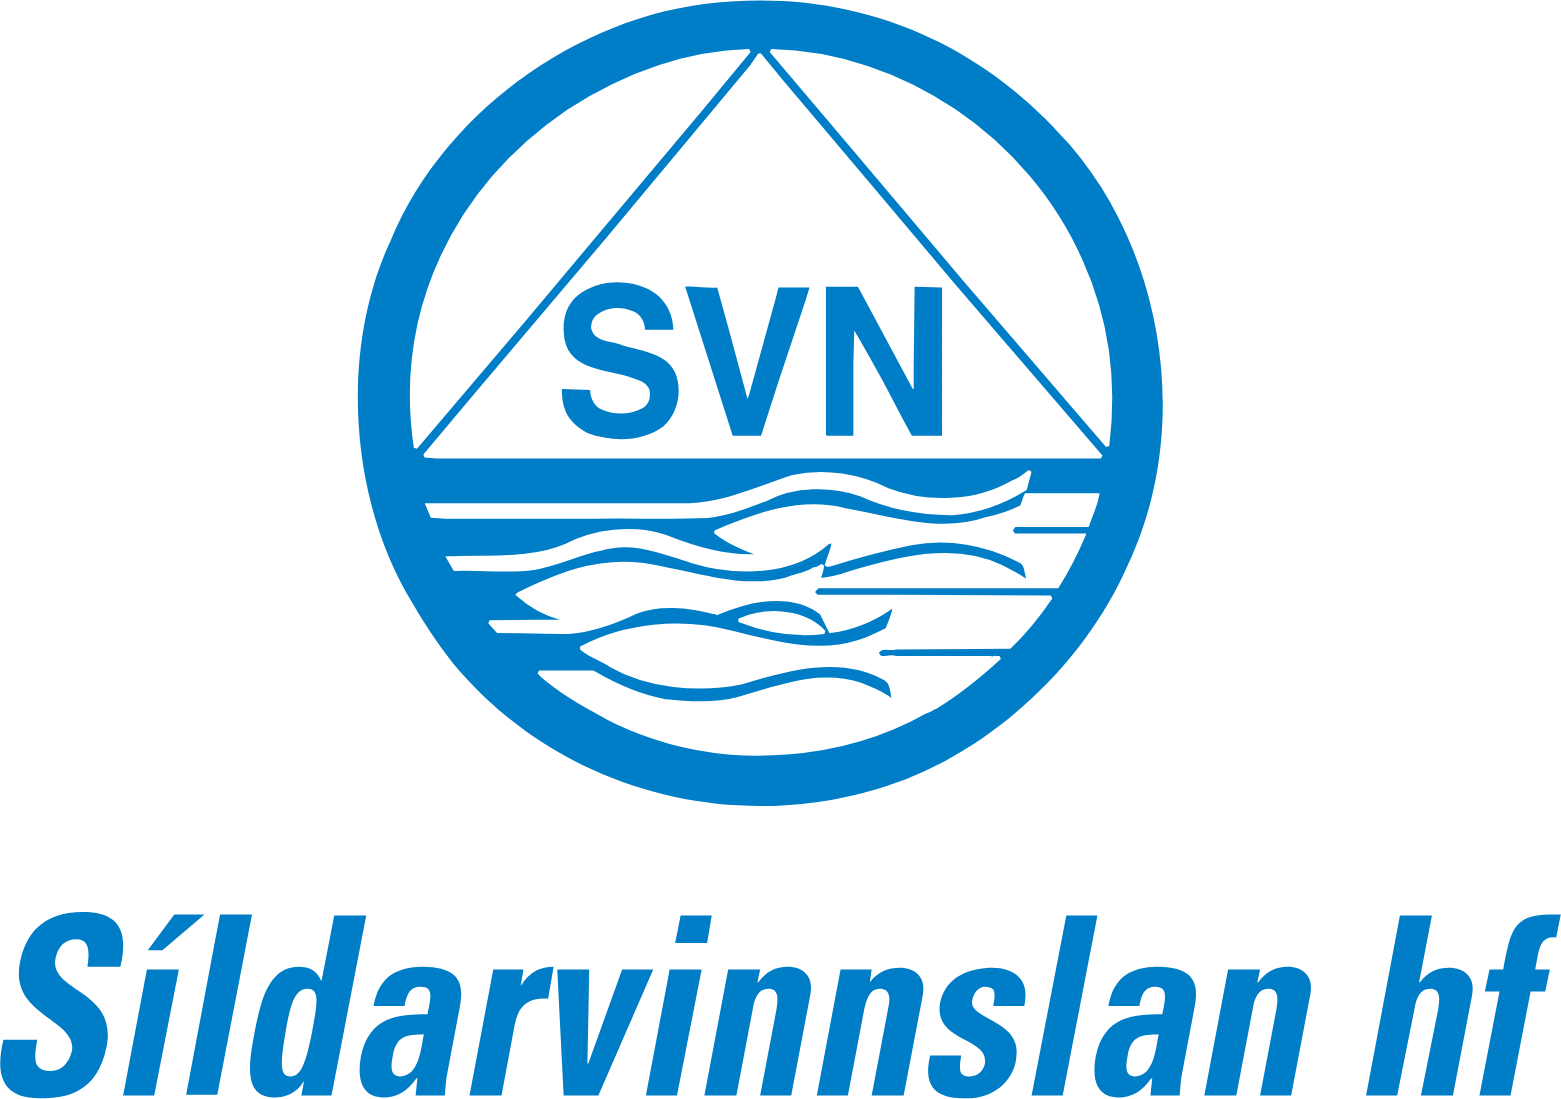 Sildarvinnslan logo large (transparent PNG)